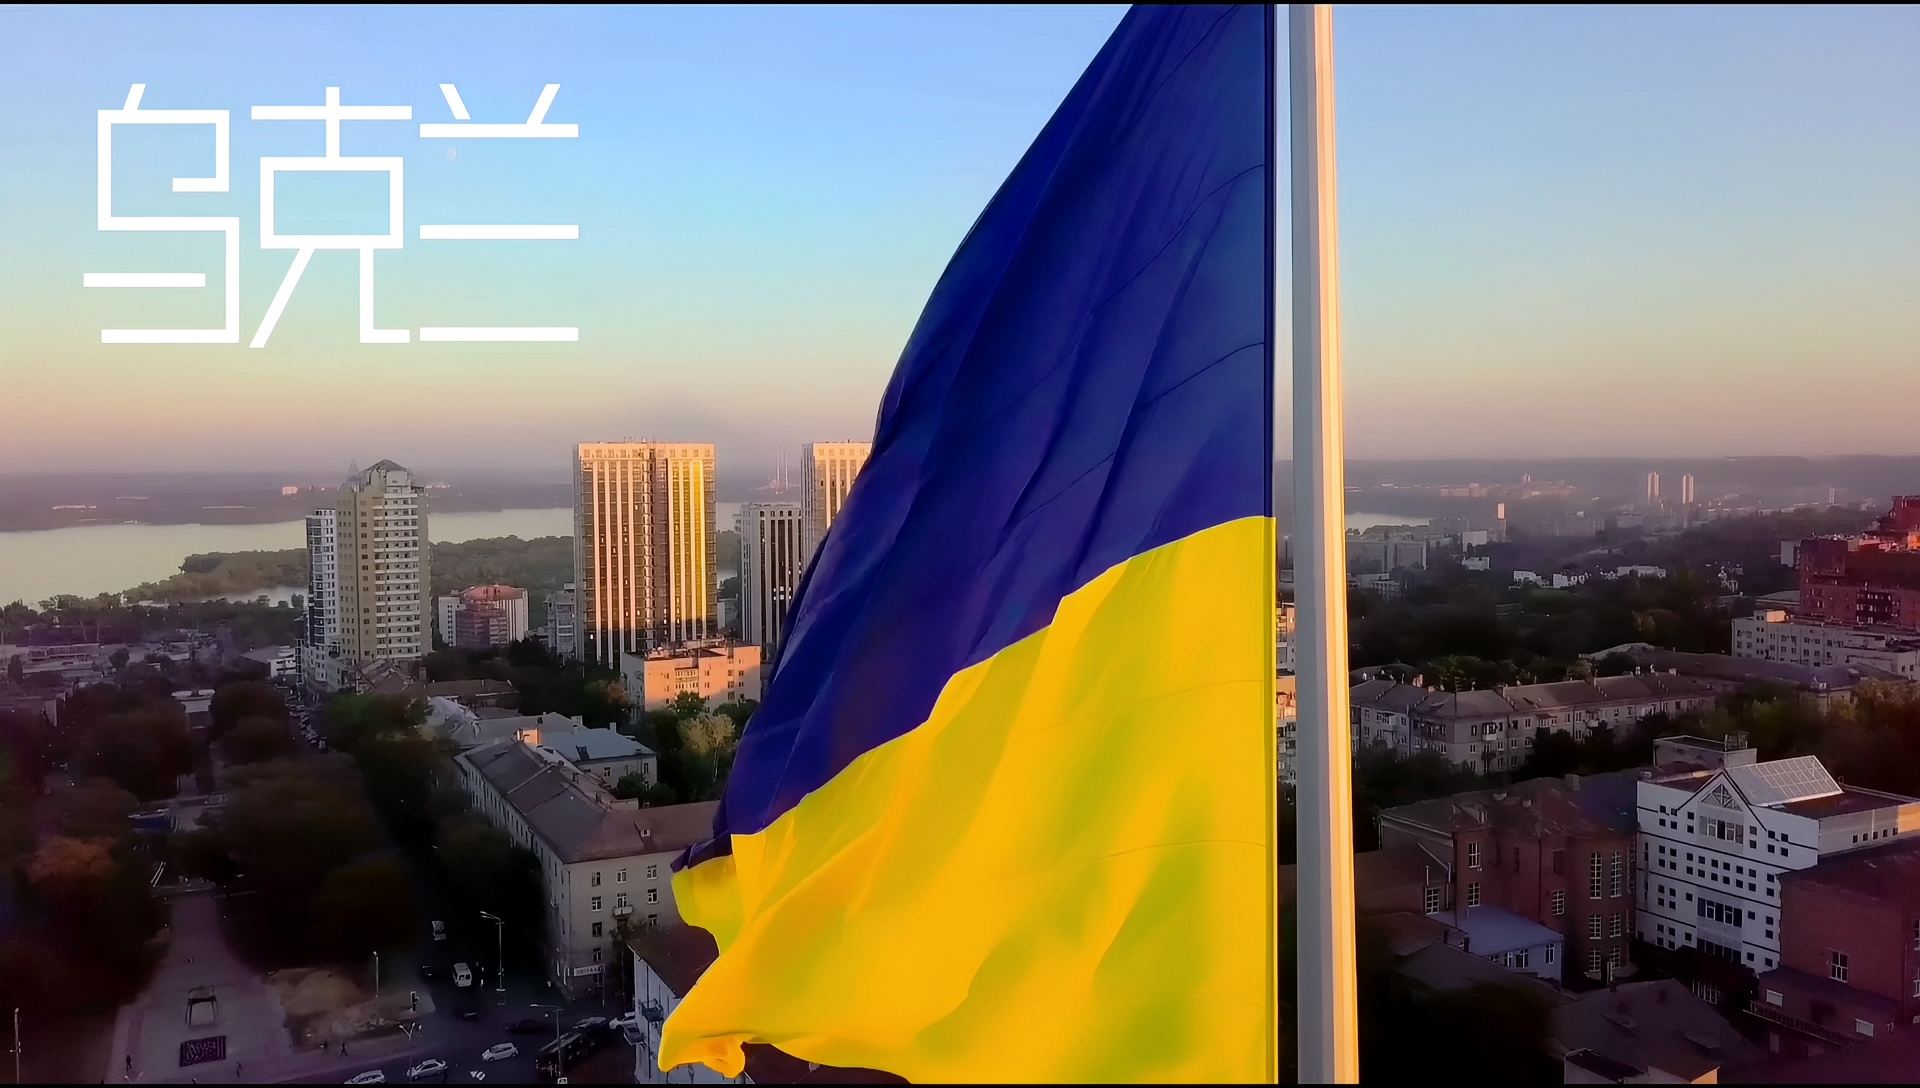 乌克兰美女如云 | 来看看乌克兰街景吧